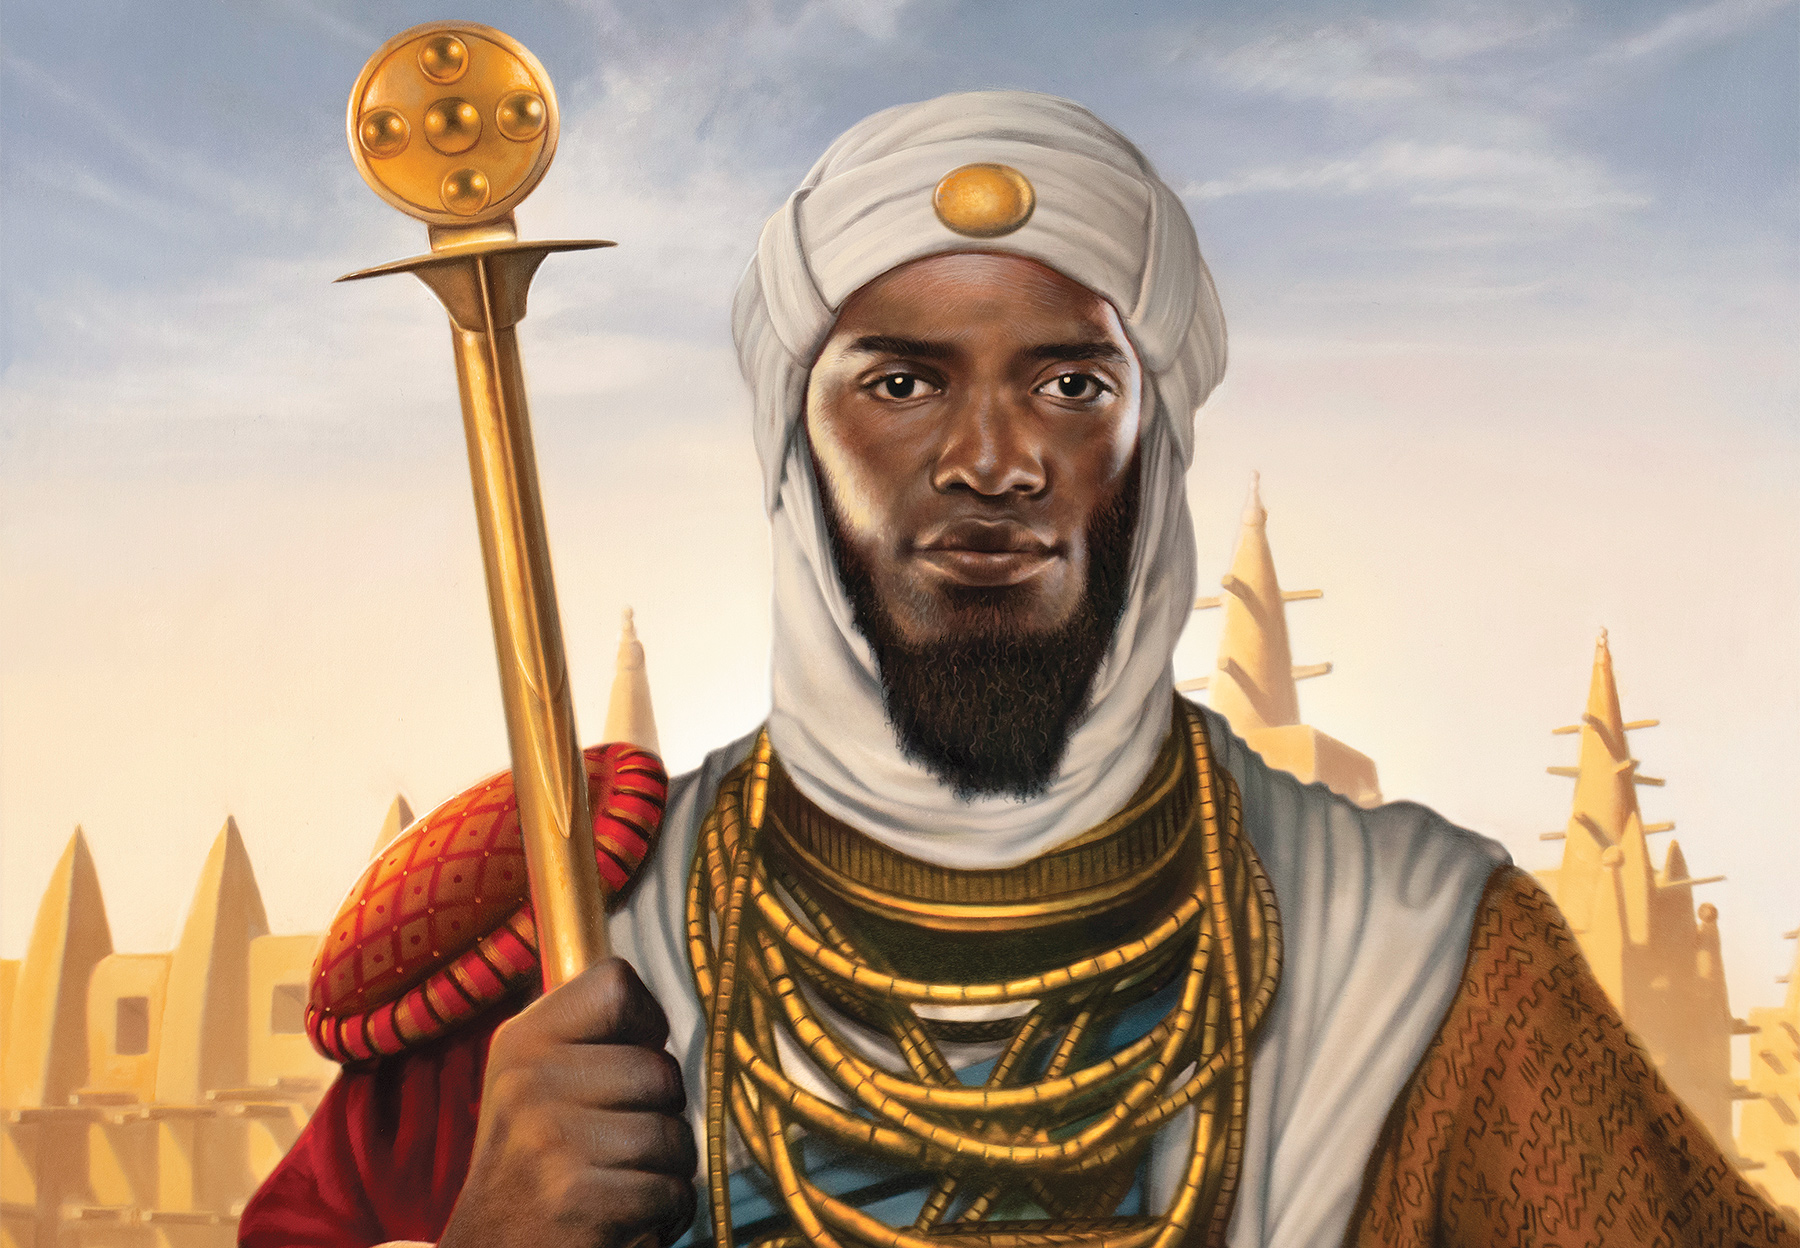 An artist's modern interpretation of Mansa Musa